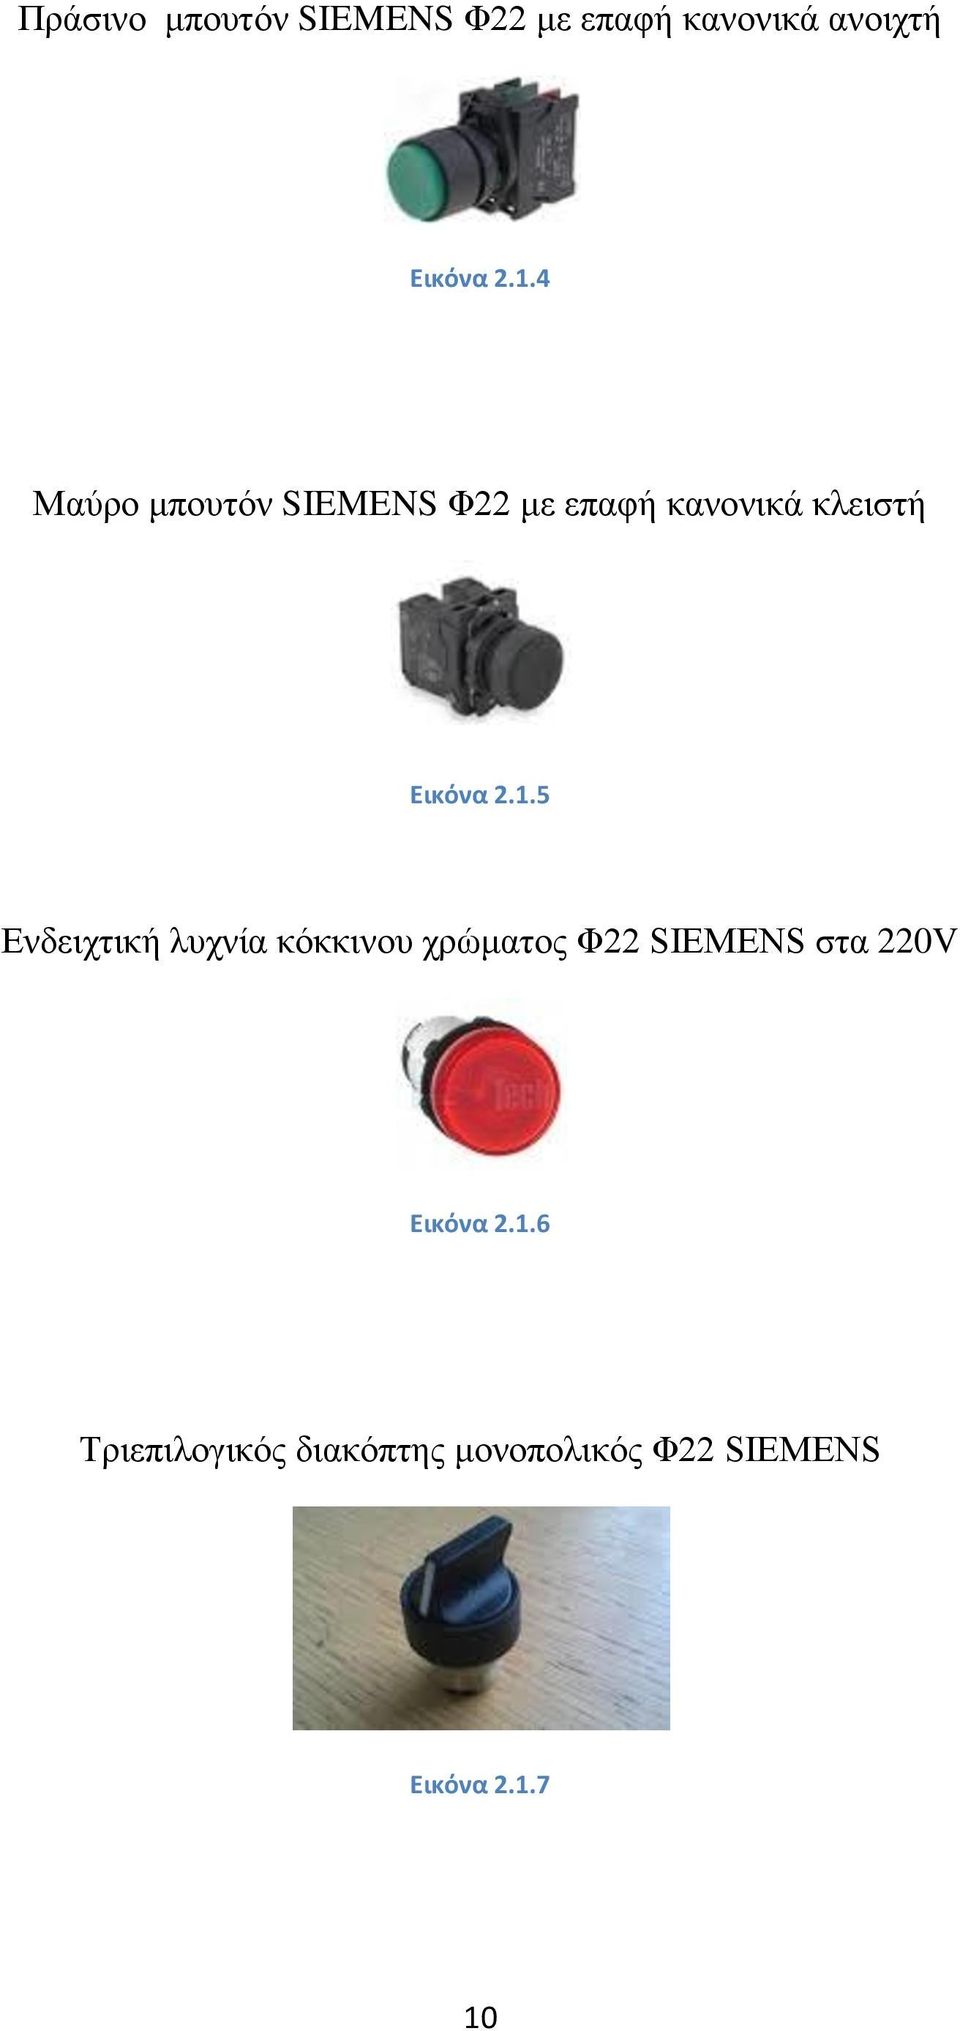 5 Ενδειχτική λυχνία κόκκινου χρώματος Φ22 SIEMENS στα 220V Εικόνα